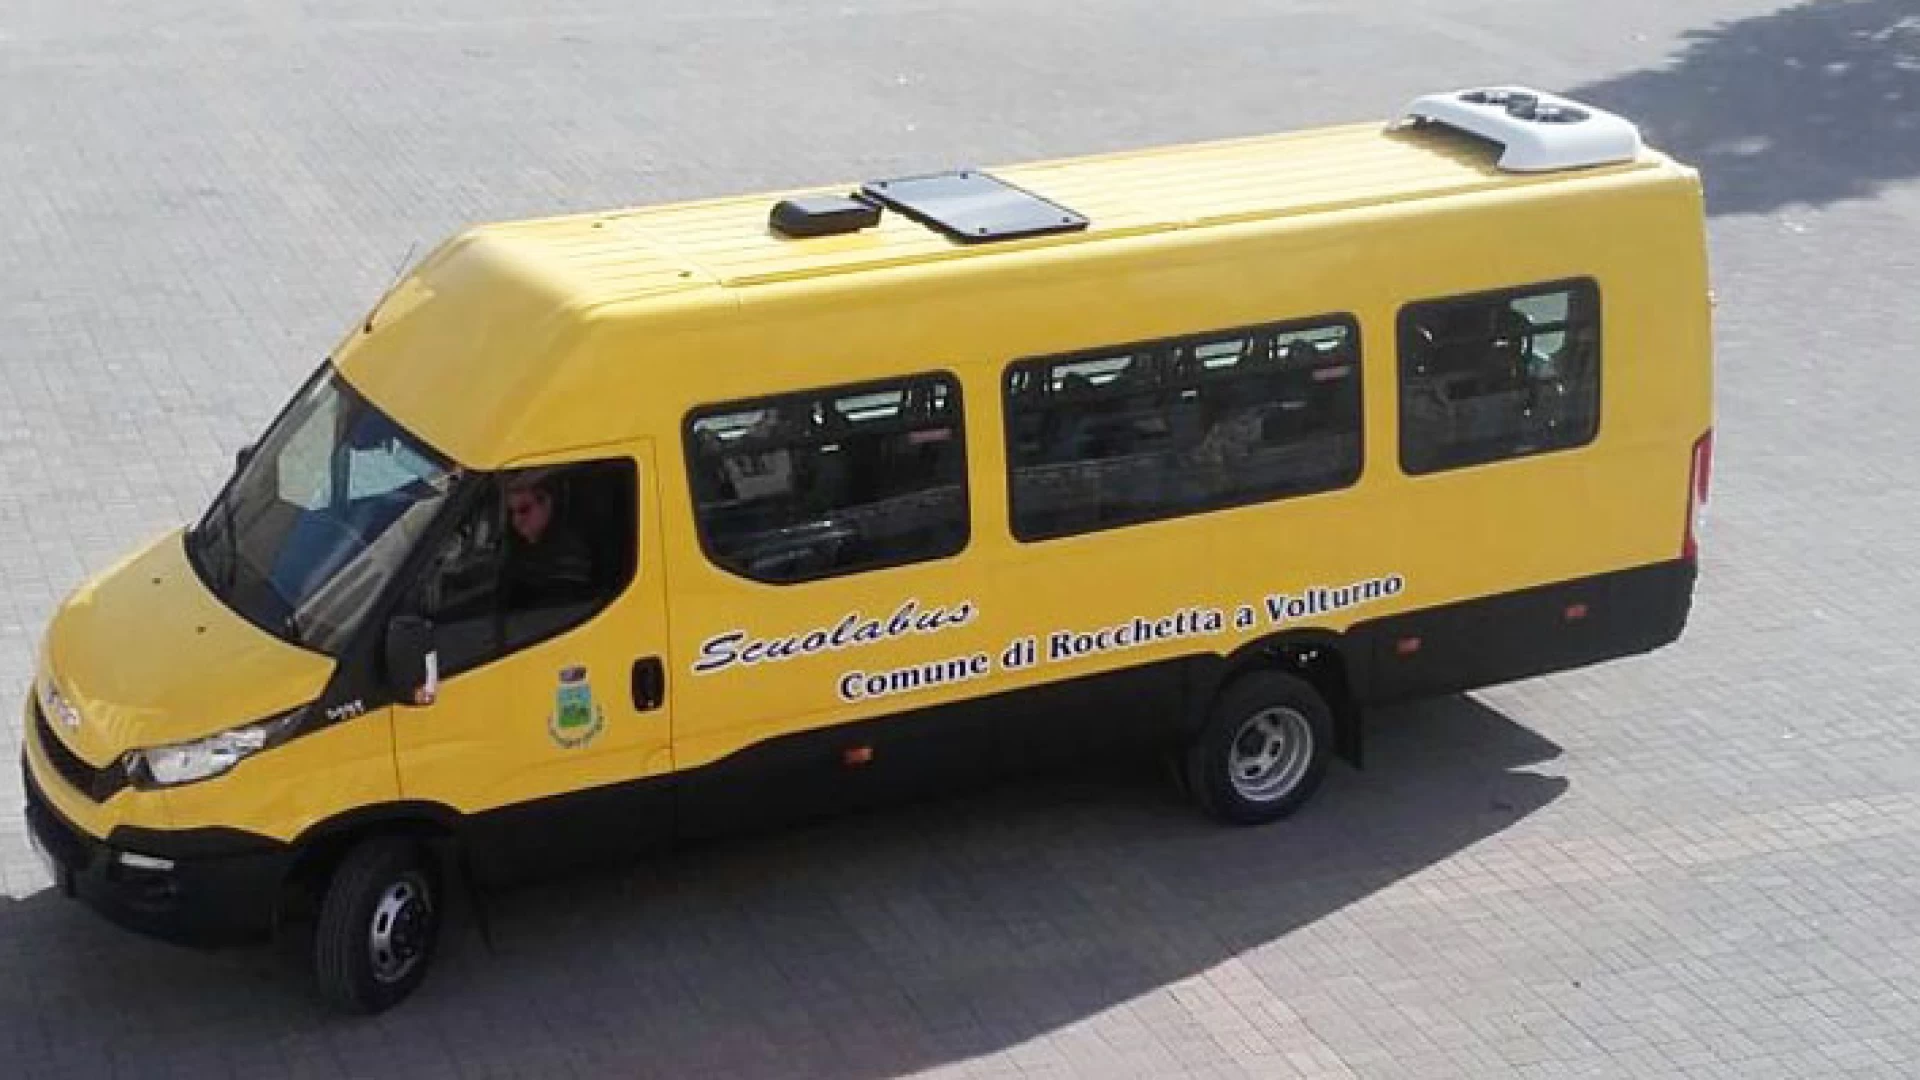 Rocchetta a Volturno: il comune si dota del nuovo scuolabus. Il mezzo all’avanguardia è stato già consegnato all’ente locale. I bambini viaggeranno in totale sicurezza.